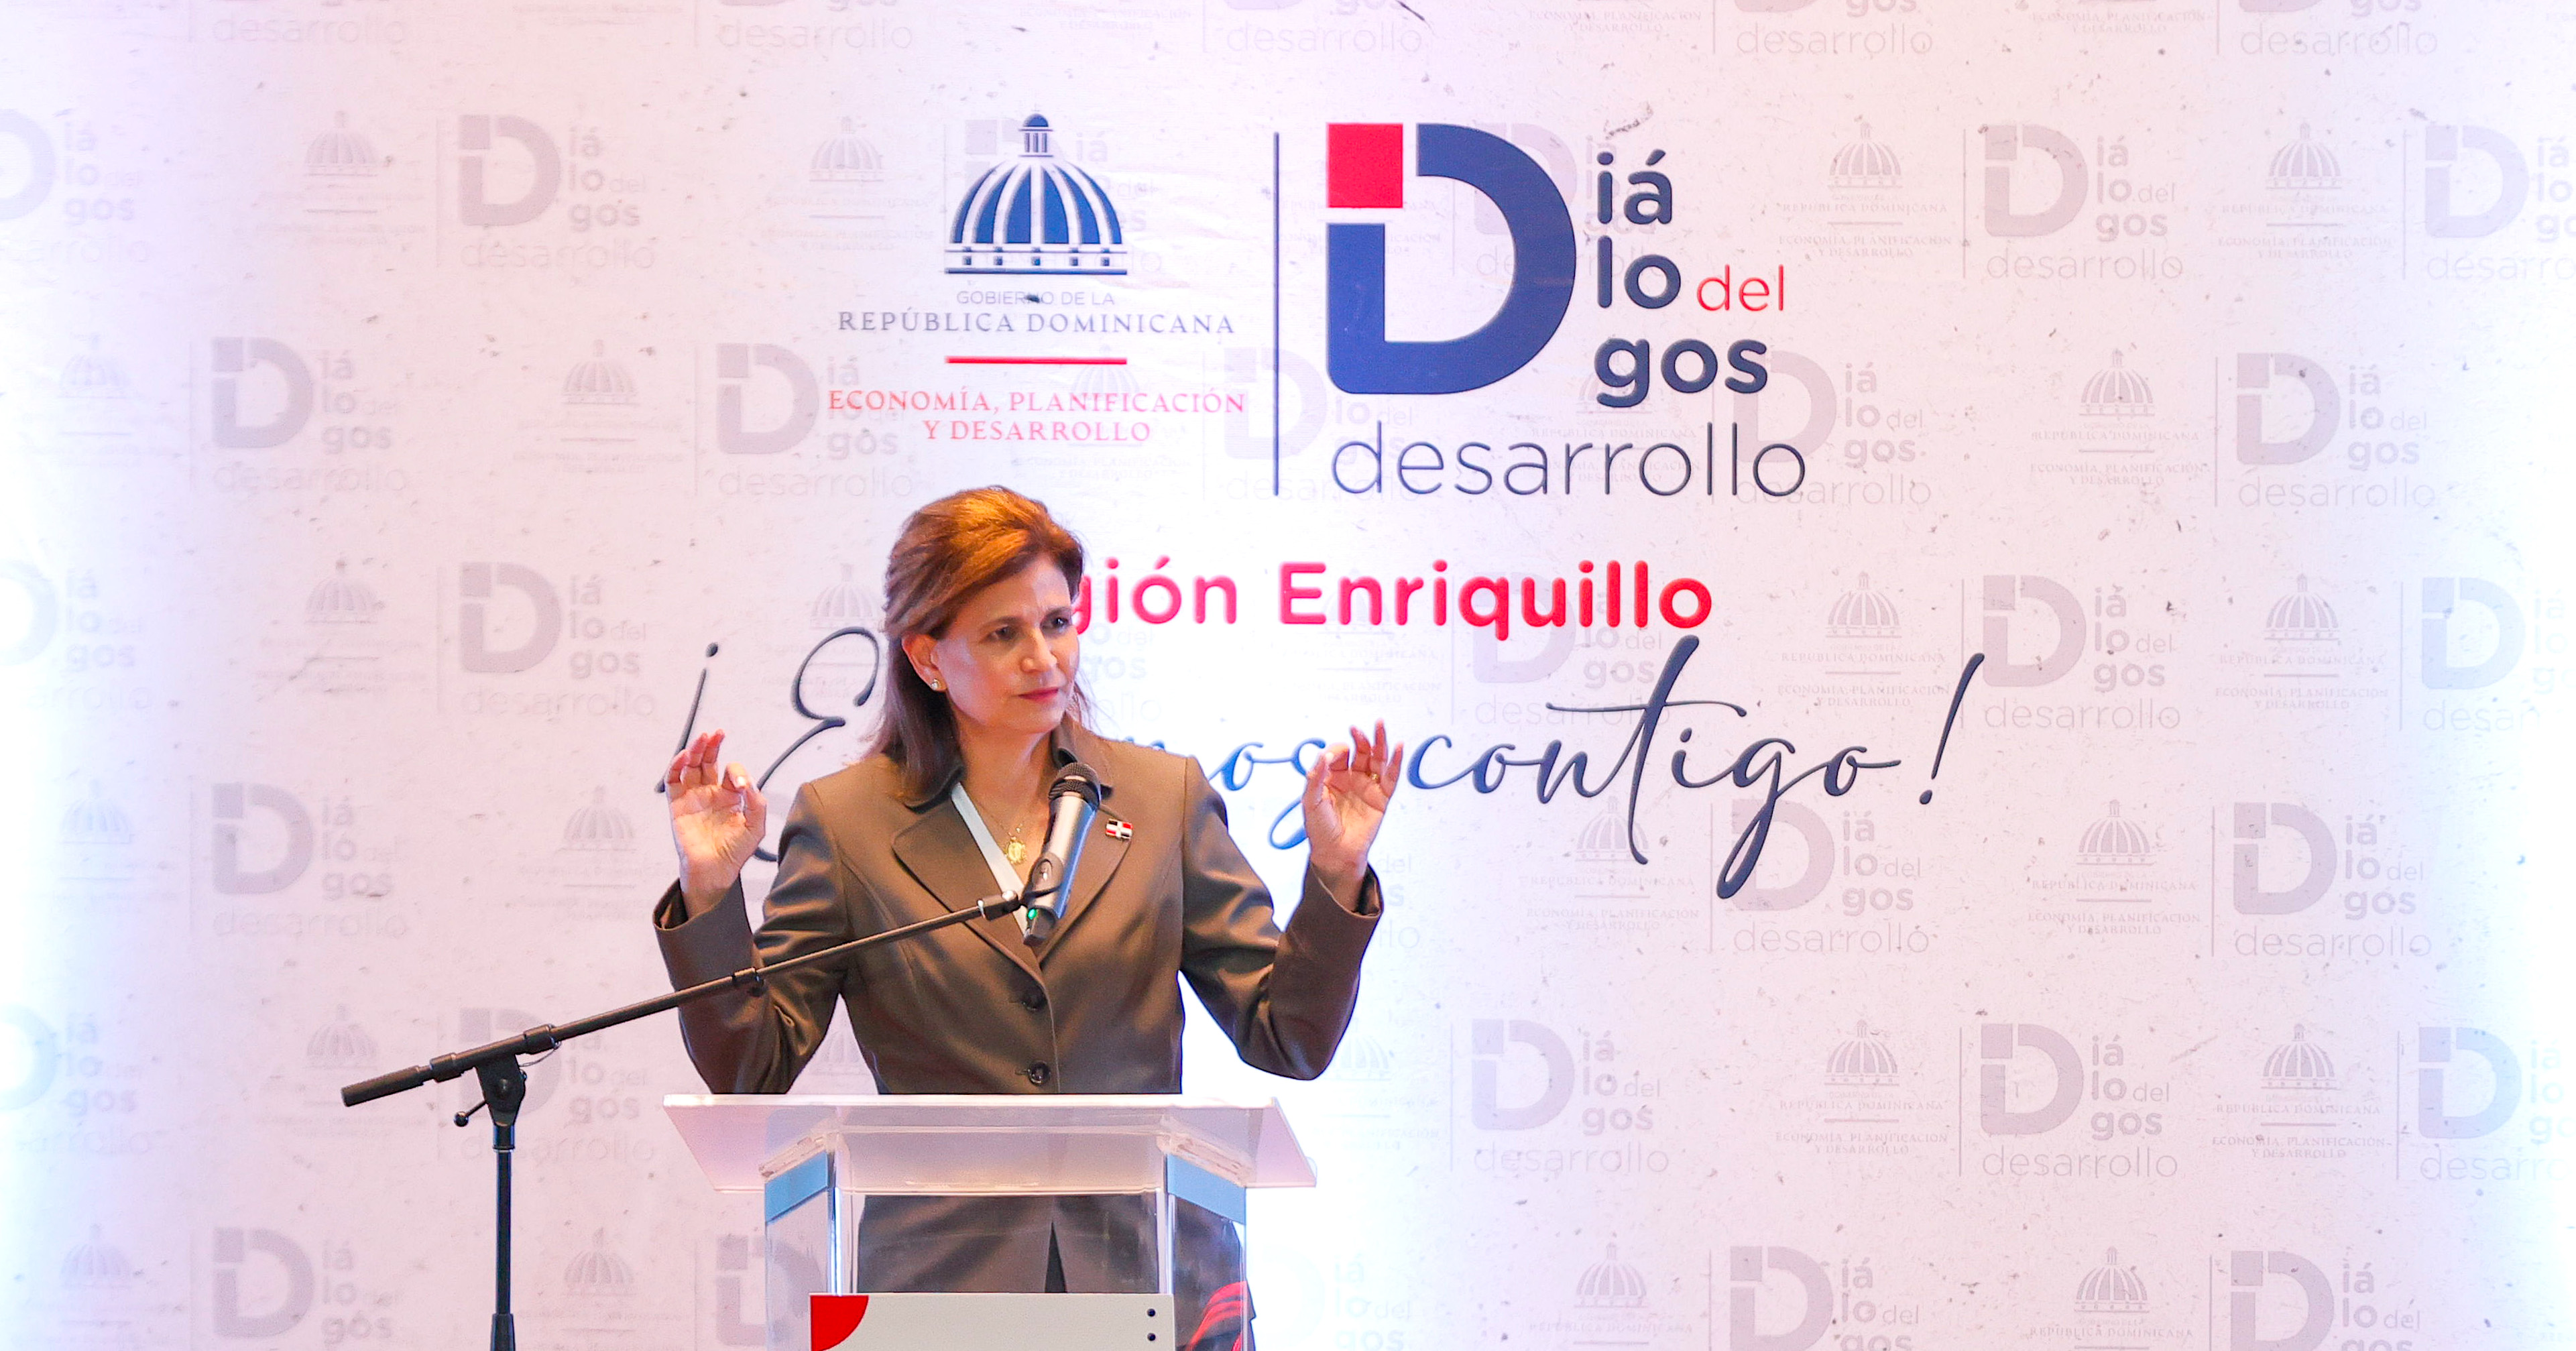 REPÚBLICA DOMINICANA: Vicepresidenta Raquel Peña encabeza Diálogos del Desarrollo en la región Enriquillo para abordar su transformación económica